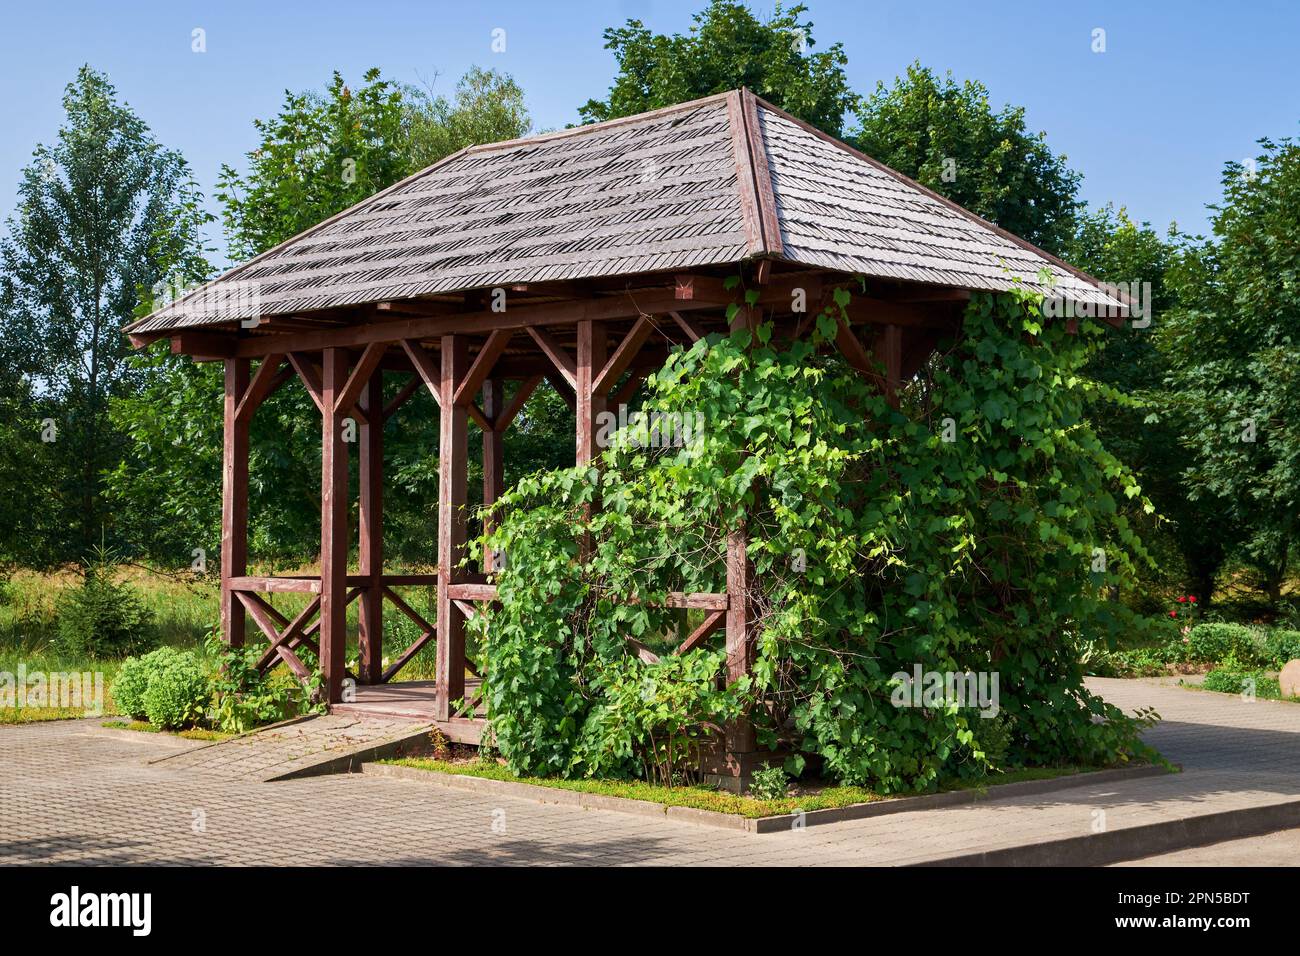 Holzpavillon im Garten oder im Sommergarten. Summerhouse Pergola mit Weinblättern. Stockfoto